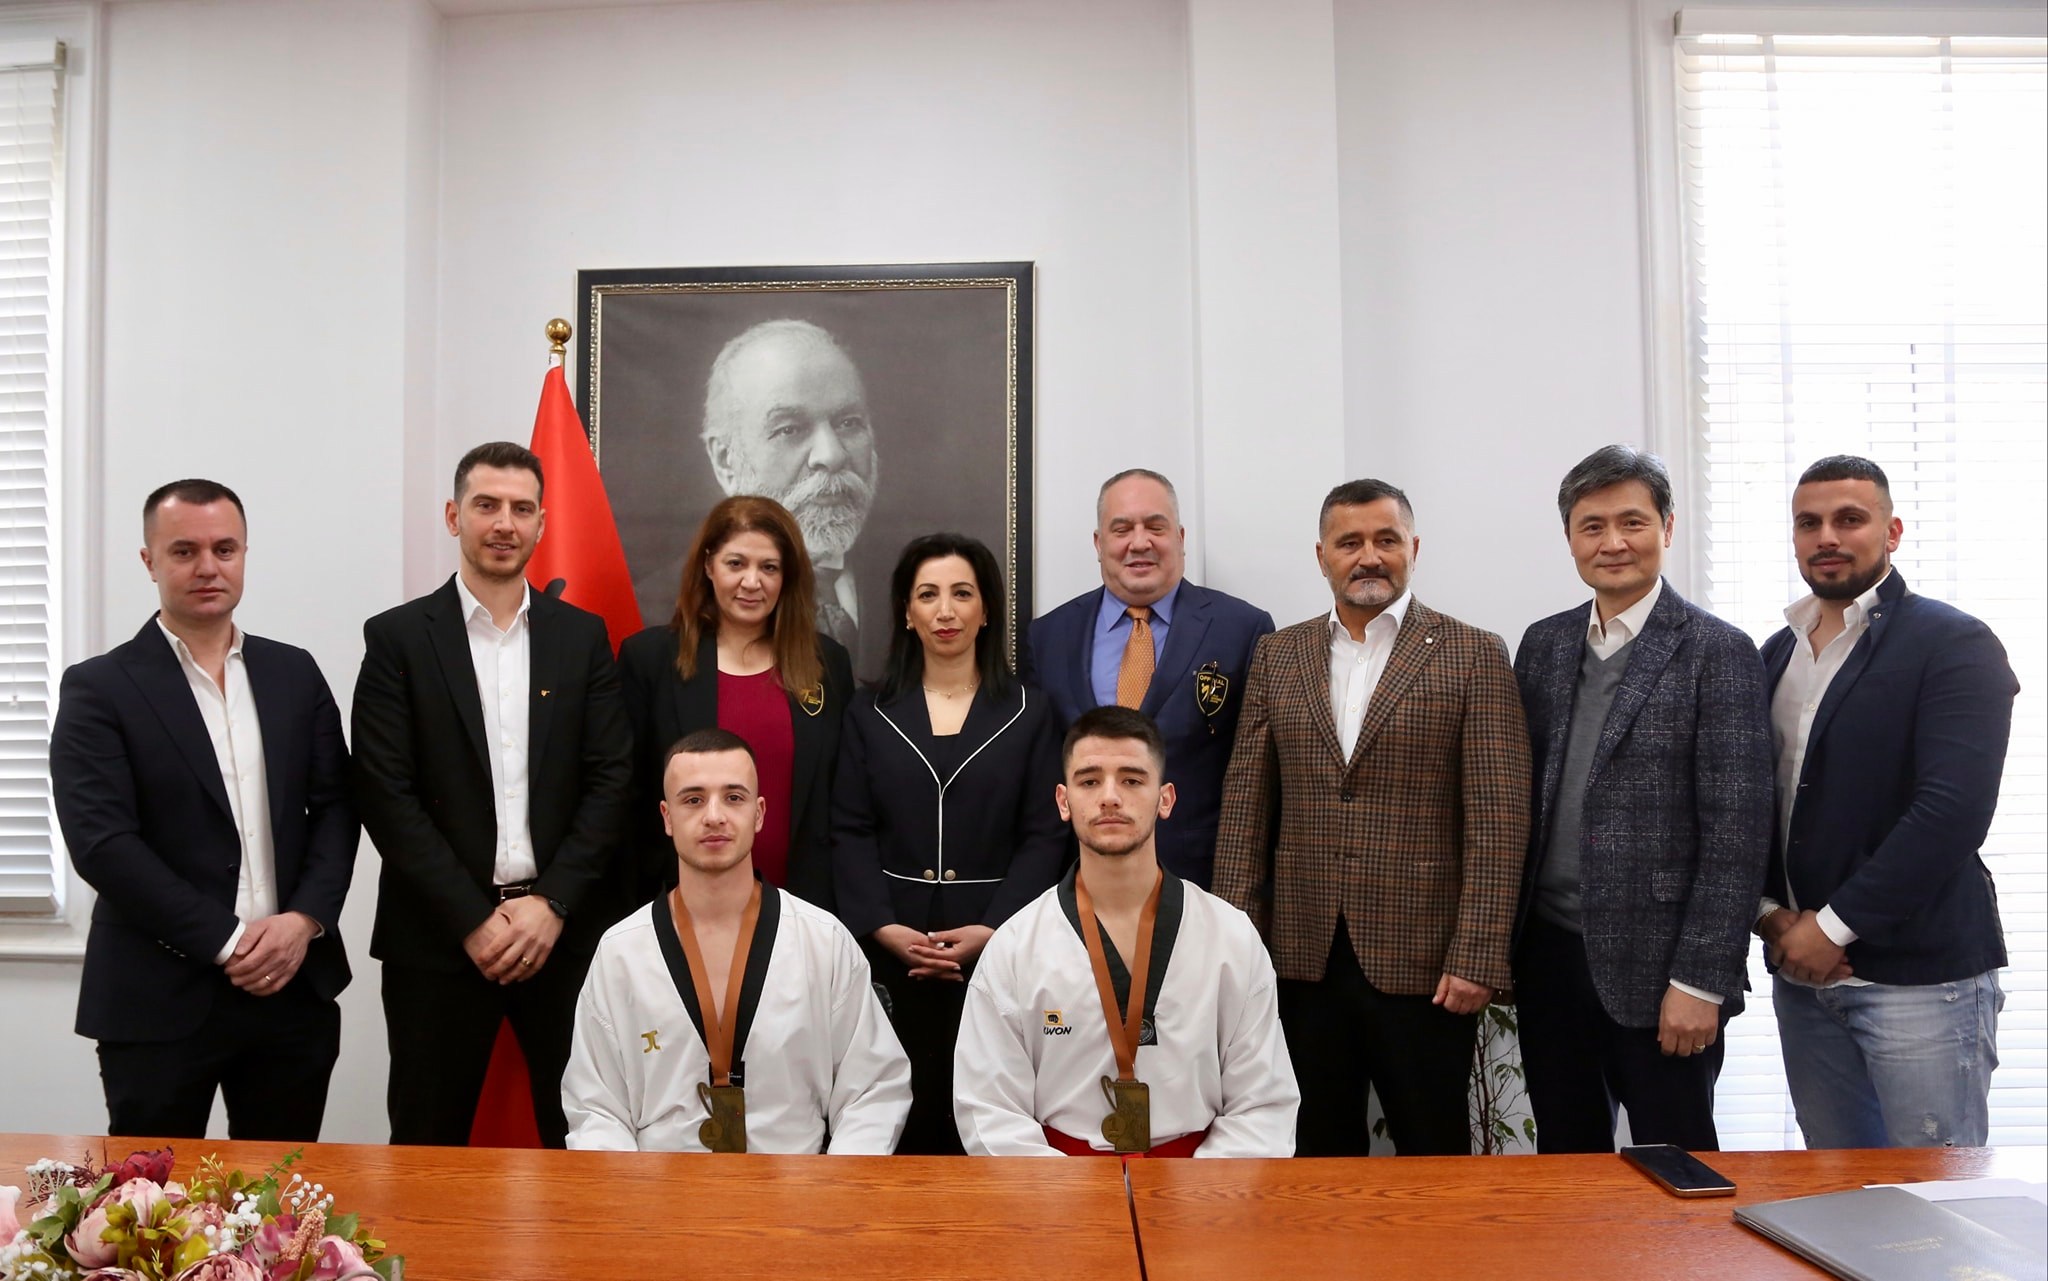 Edicioni i 7-të Evropian i Kupës së Presidentit në Taekwondo në Durrës / Kushi pret përfaqësues të huaj dhe vendas